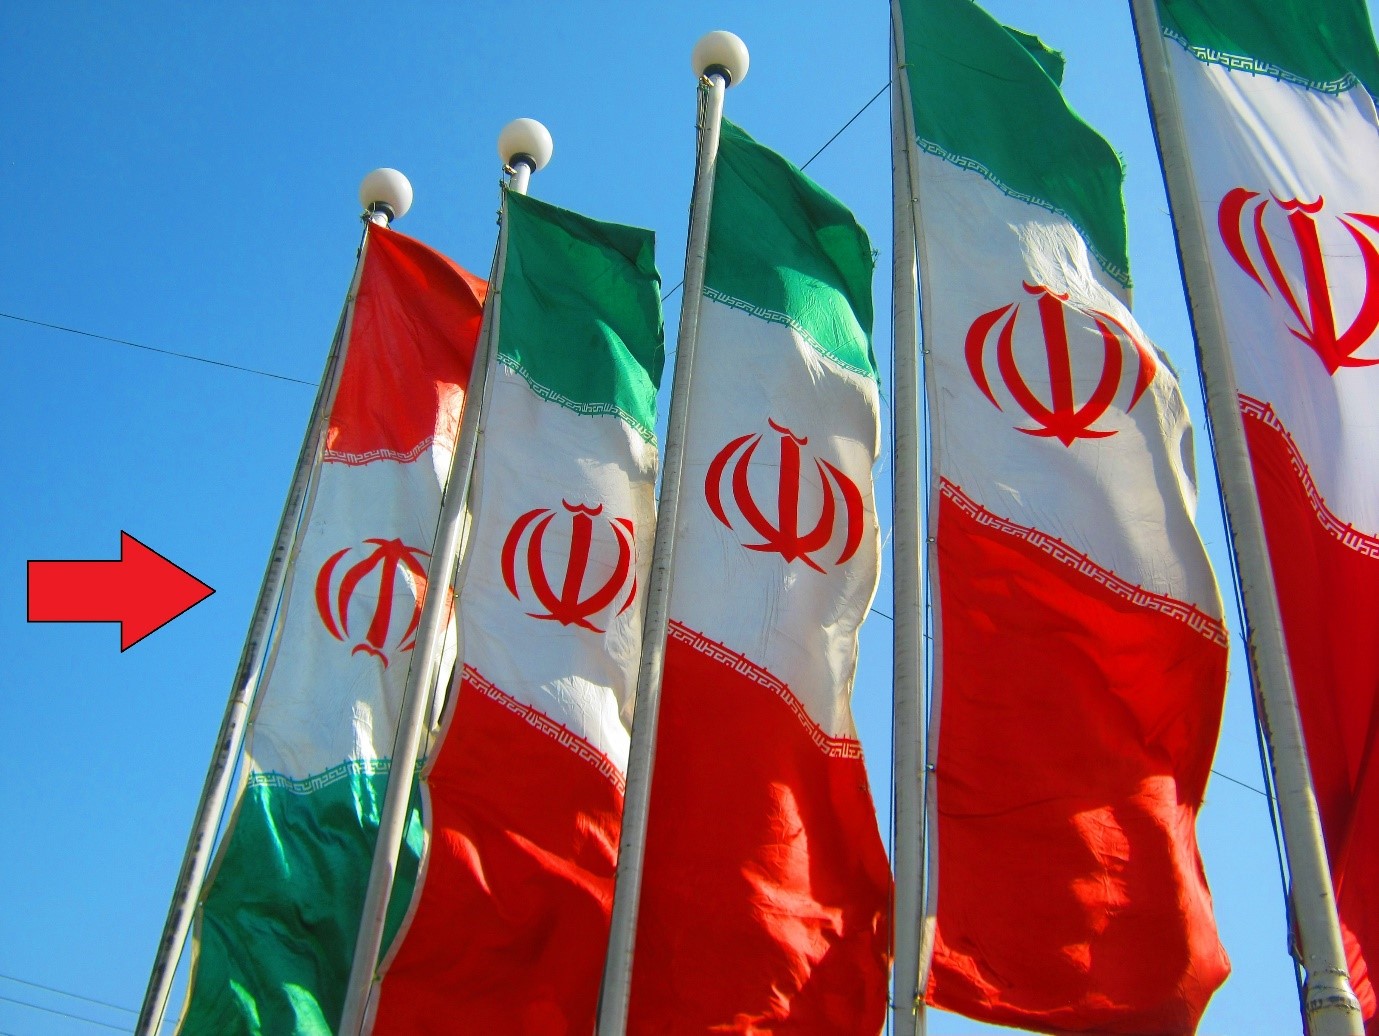 نتیجه تصویری برای پرچم ایران + تابناک